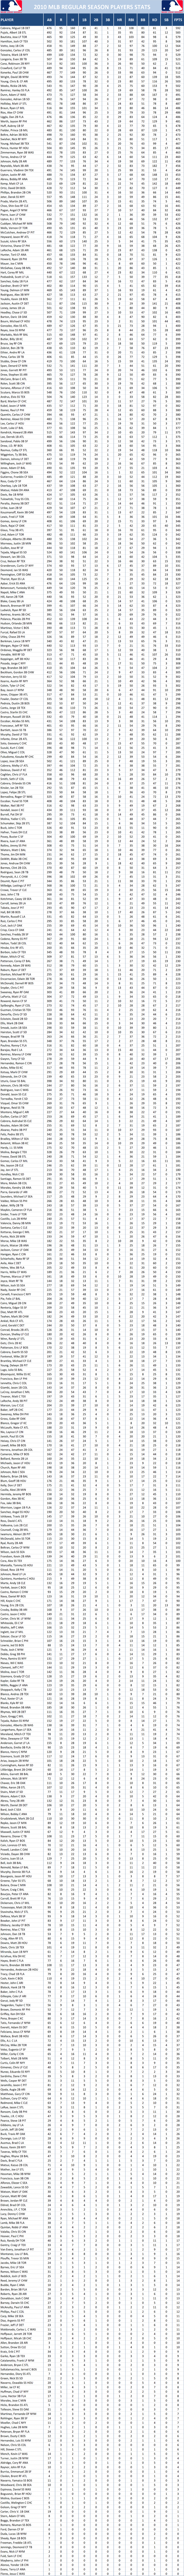 2010 Major League Baseball Pool Season Player Stats